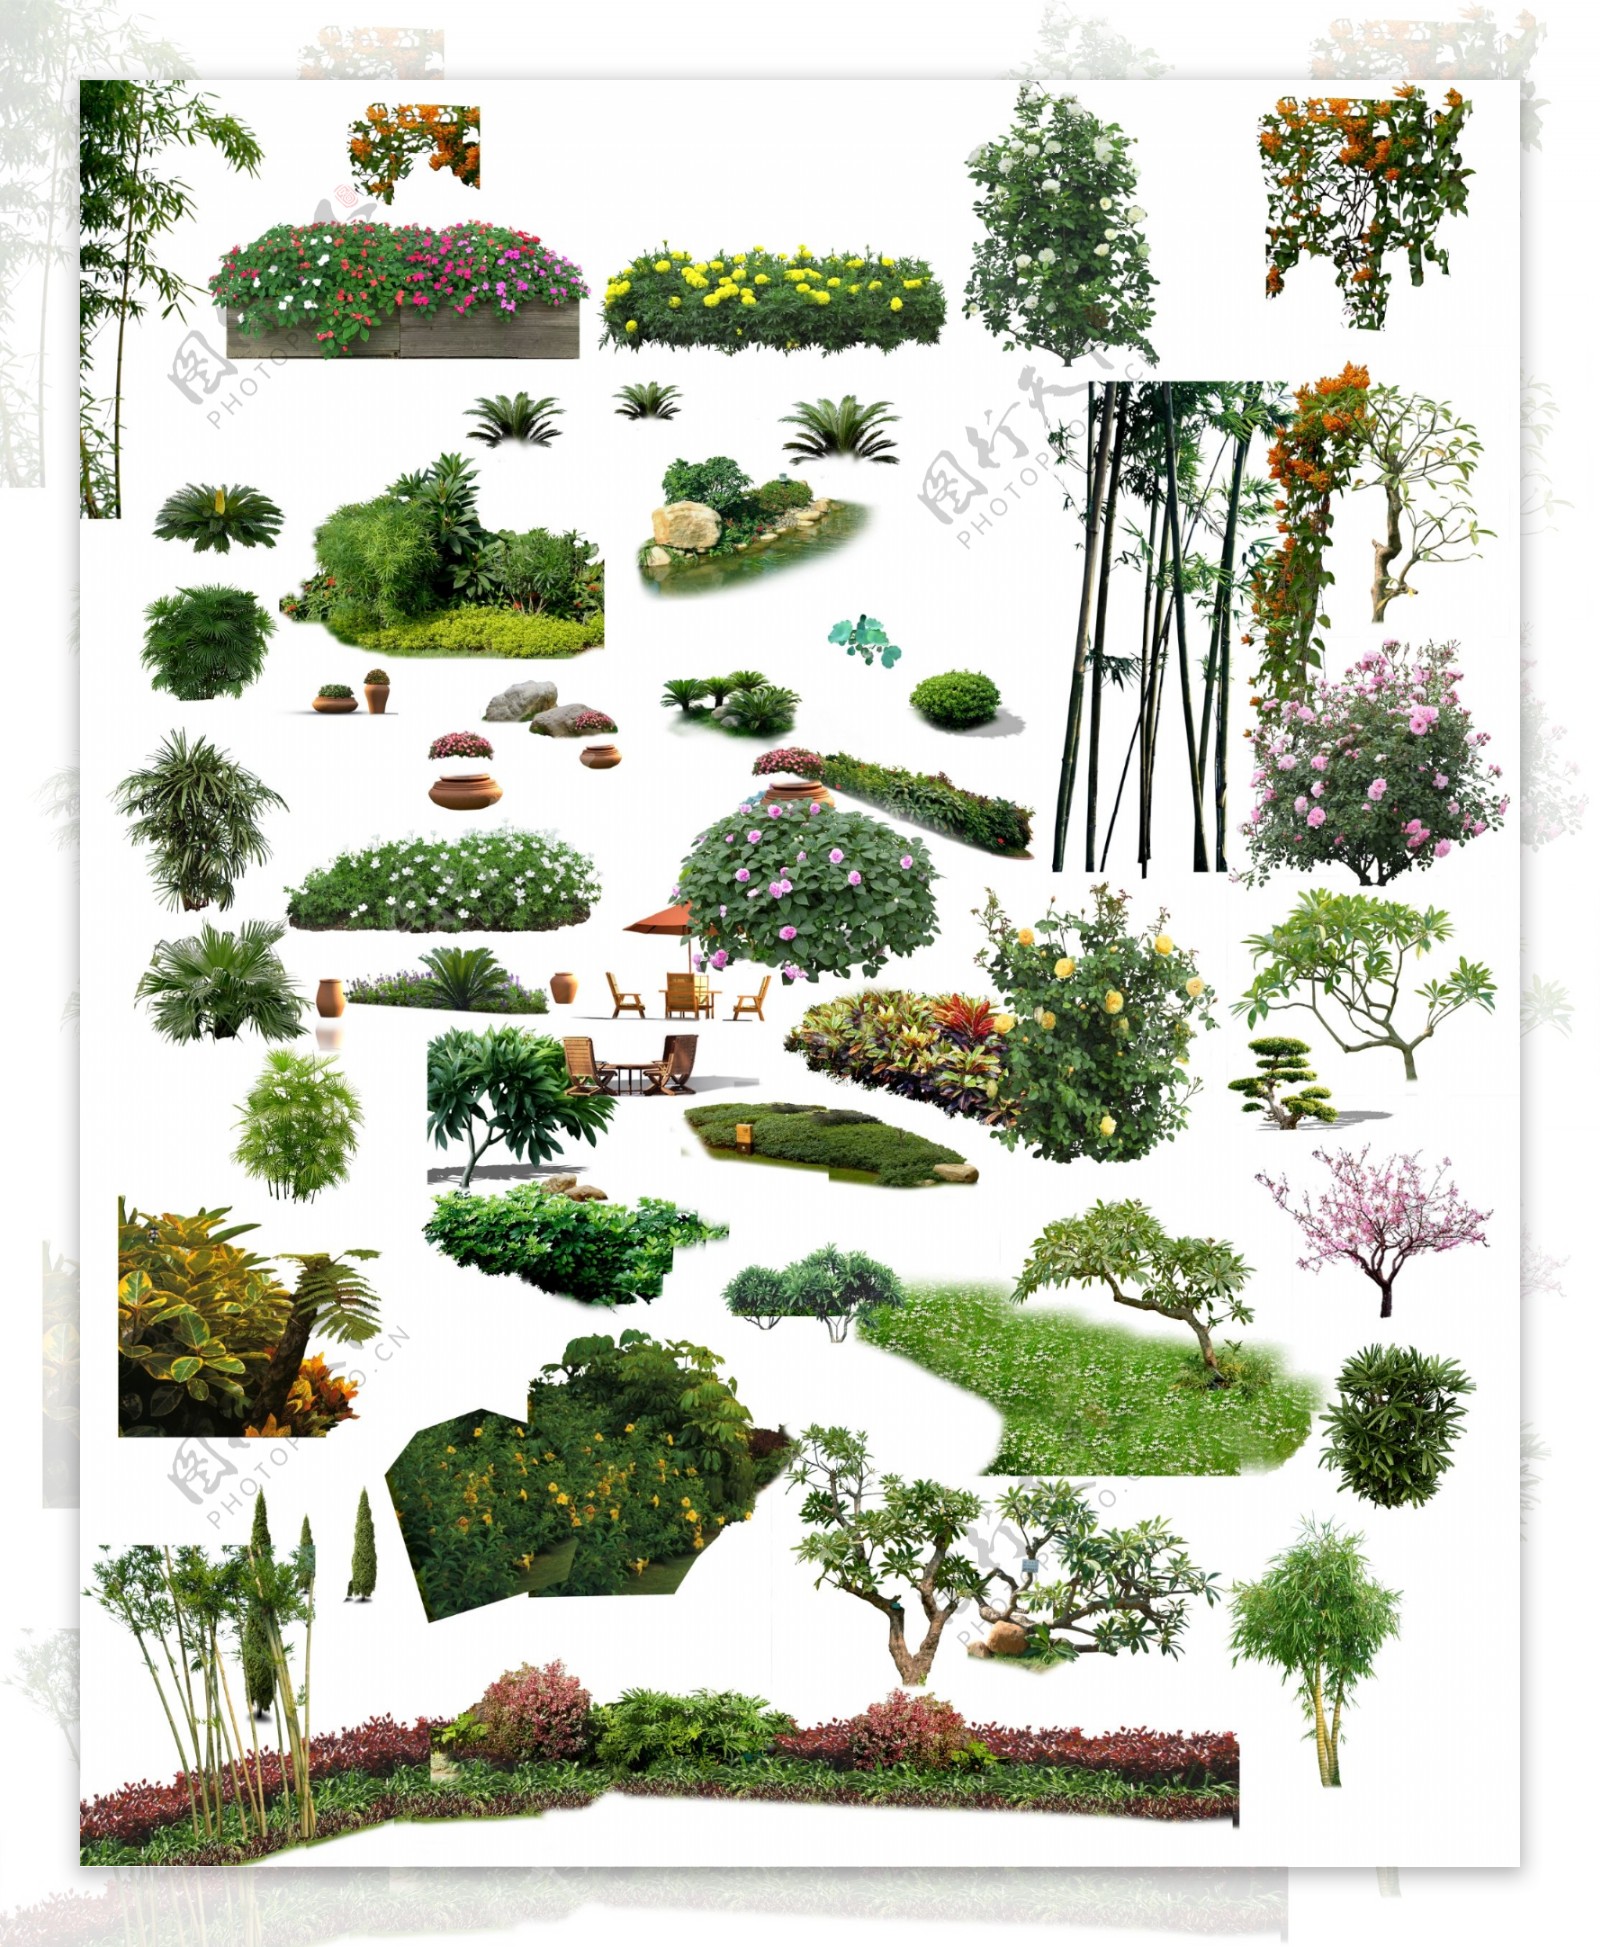 中式园林后期设计图